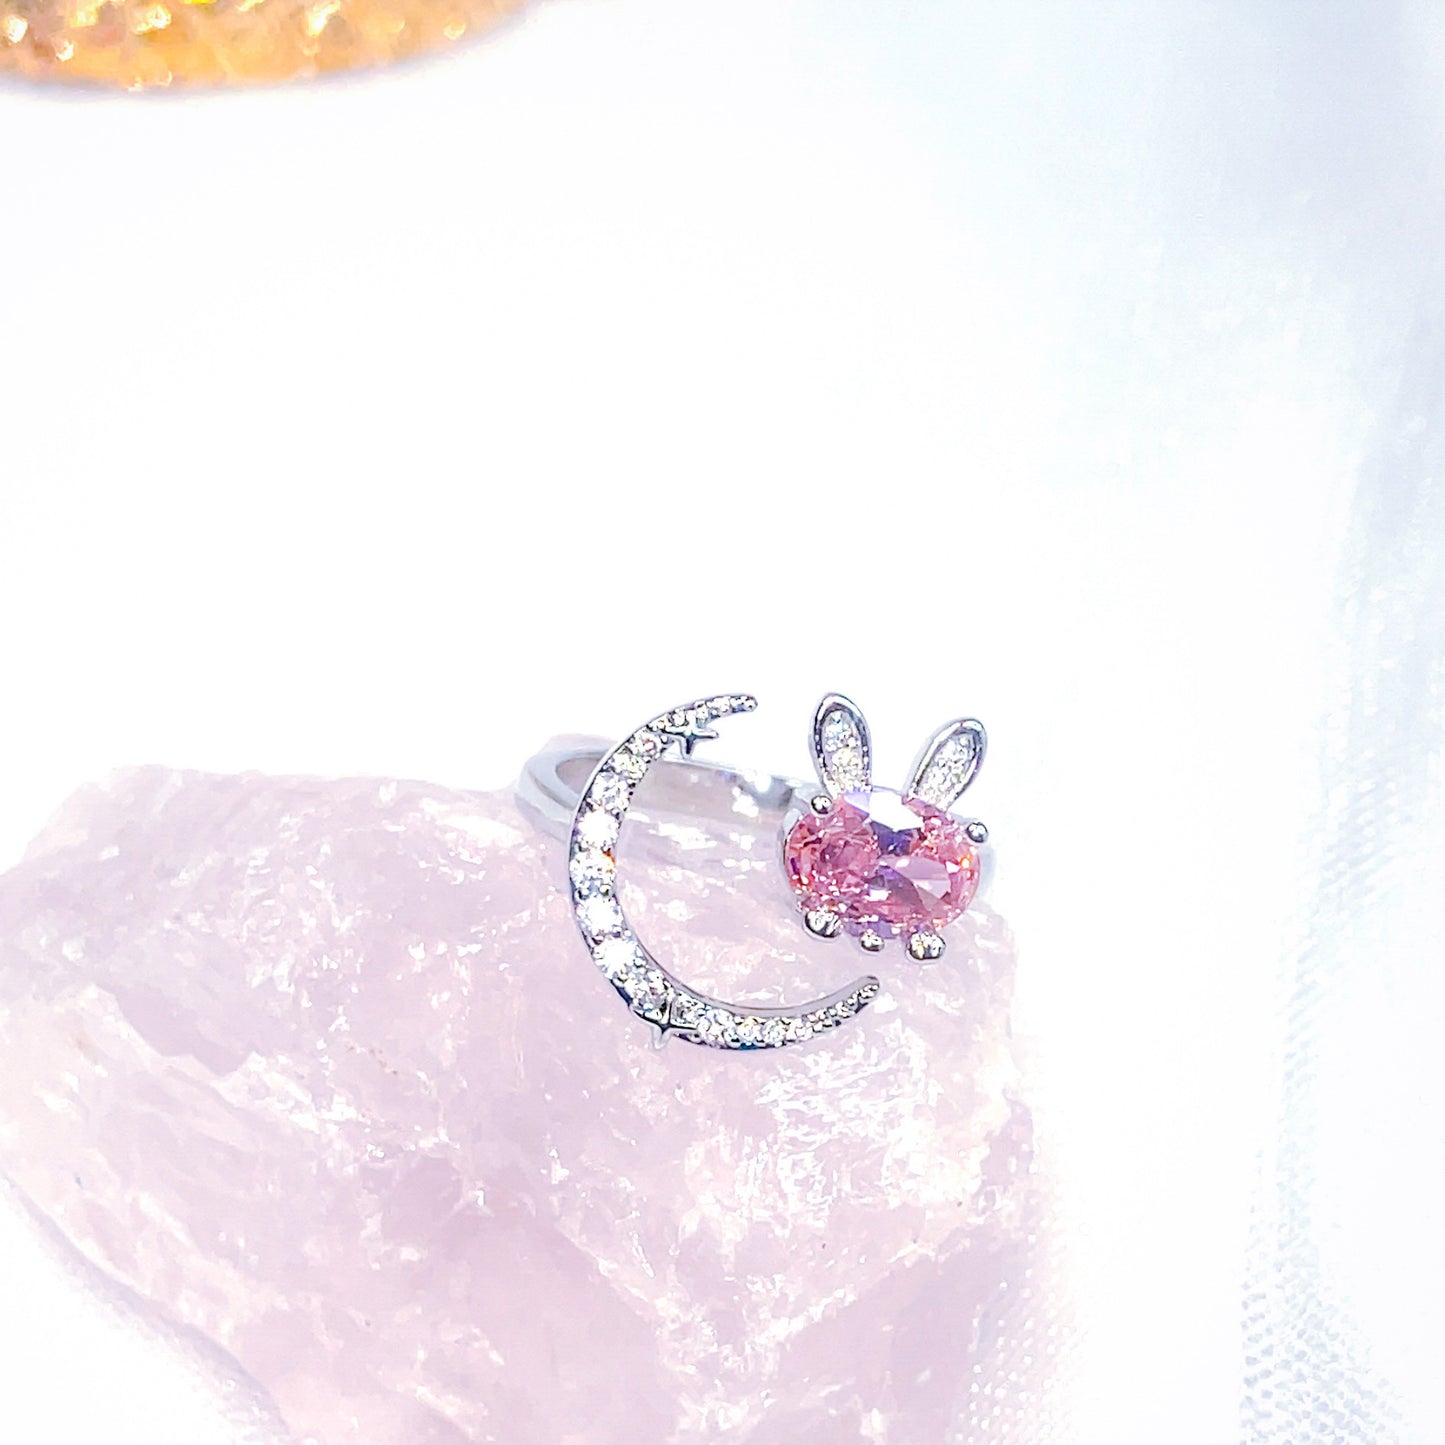 Moonlight Usagi Ring - Sailor Moon Inspired